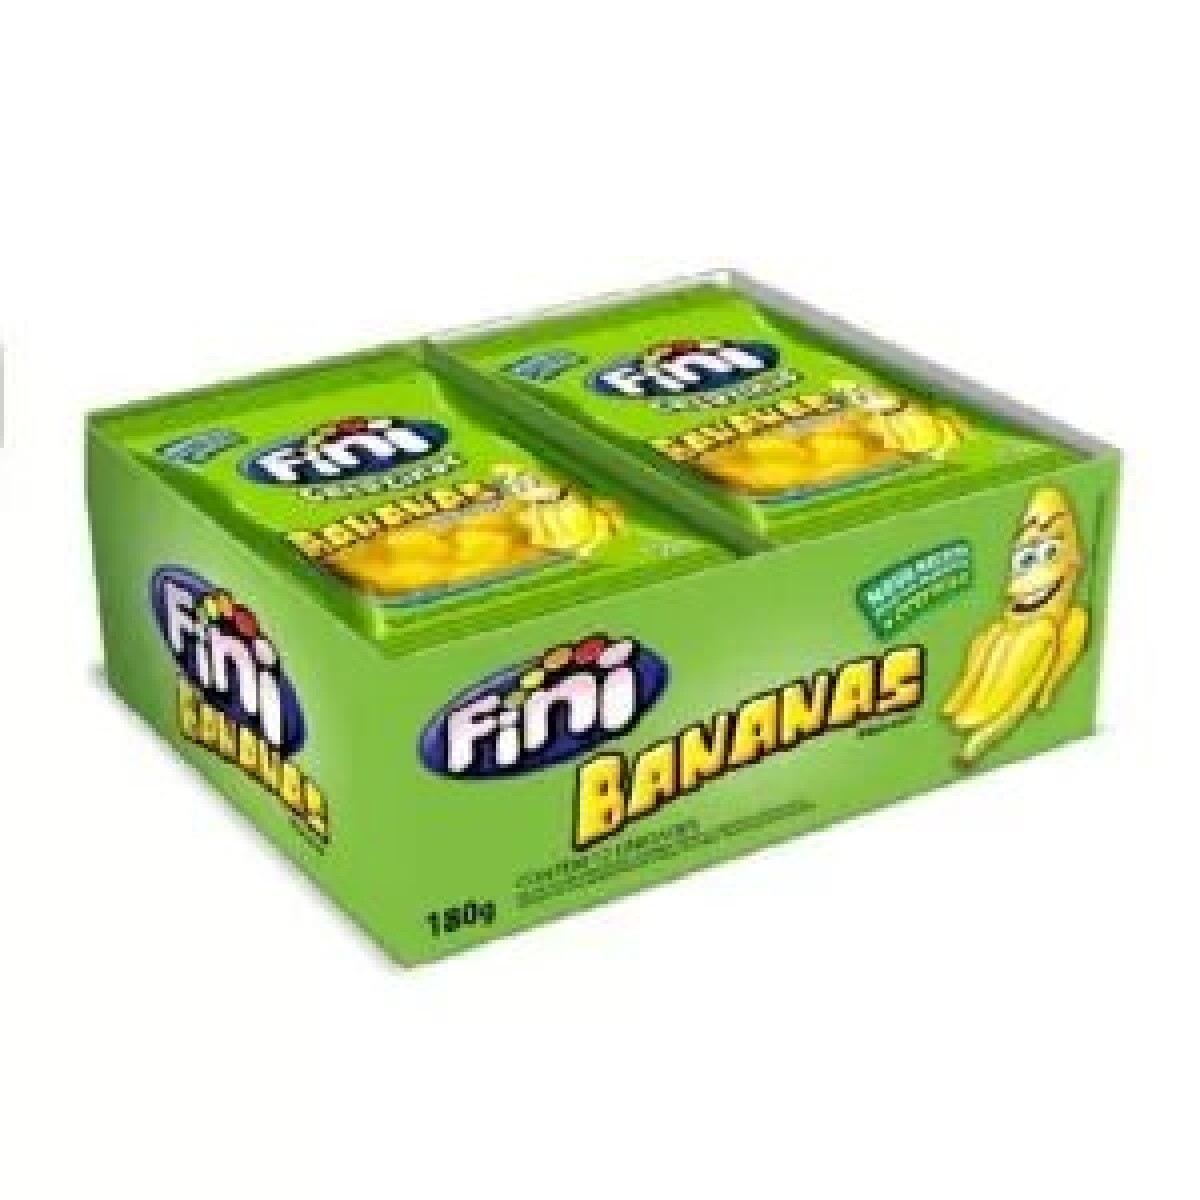 FINI 15 GRS caja x12 - Banana 